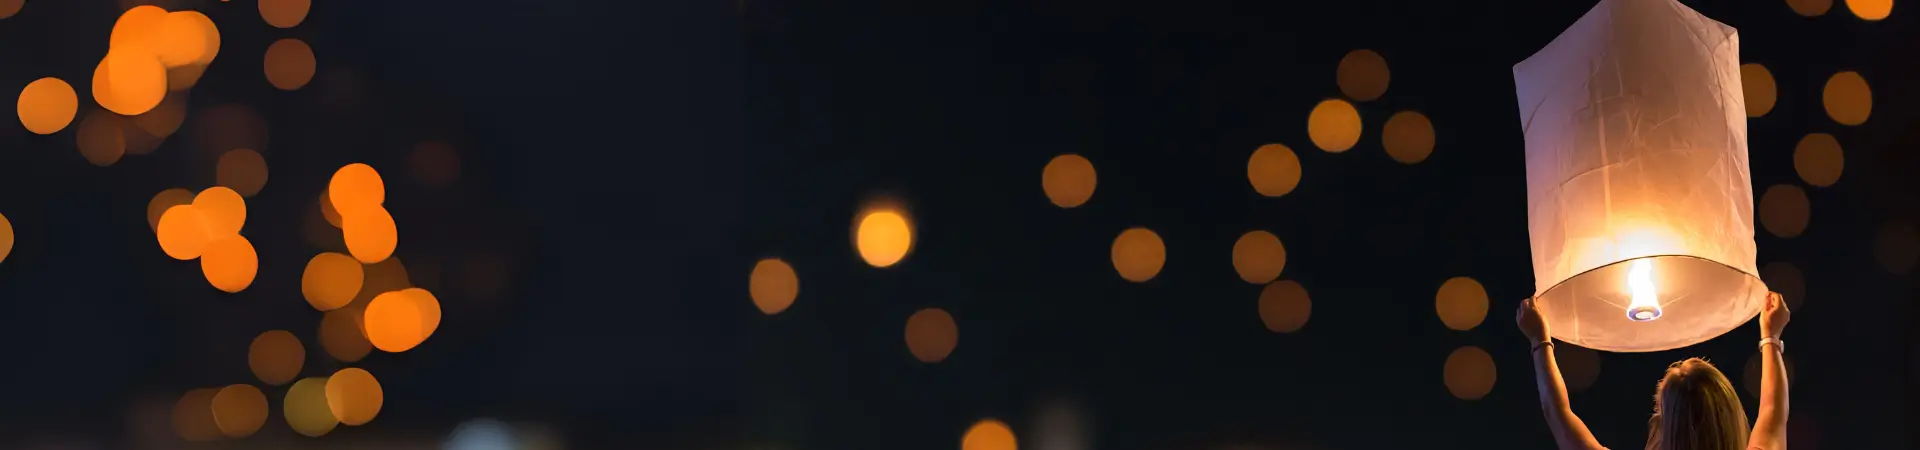 Les lanternes volantes biodégradables de Sparklers-club